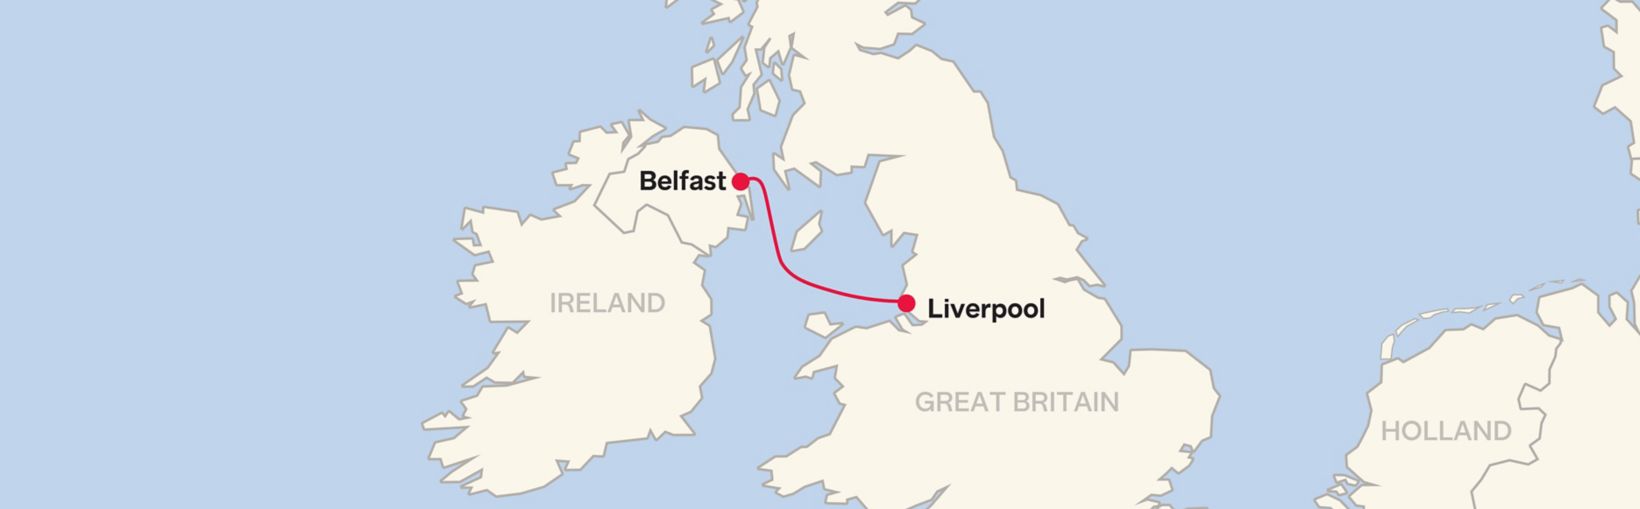 Mappa delle rotte della linea Stena Belfast - Liverpool